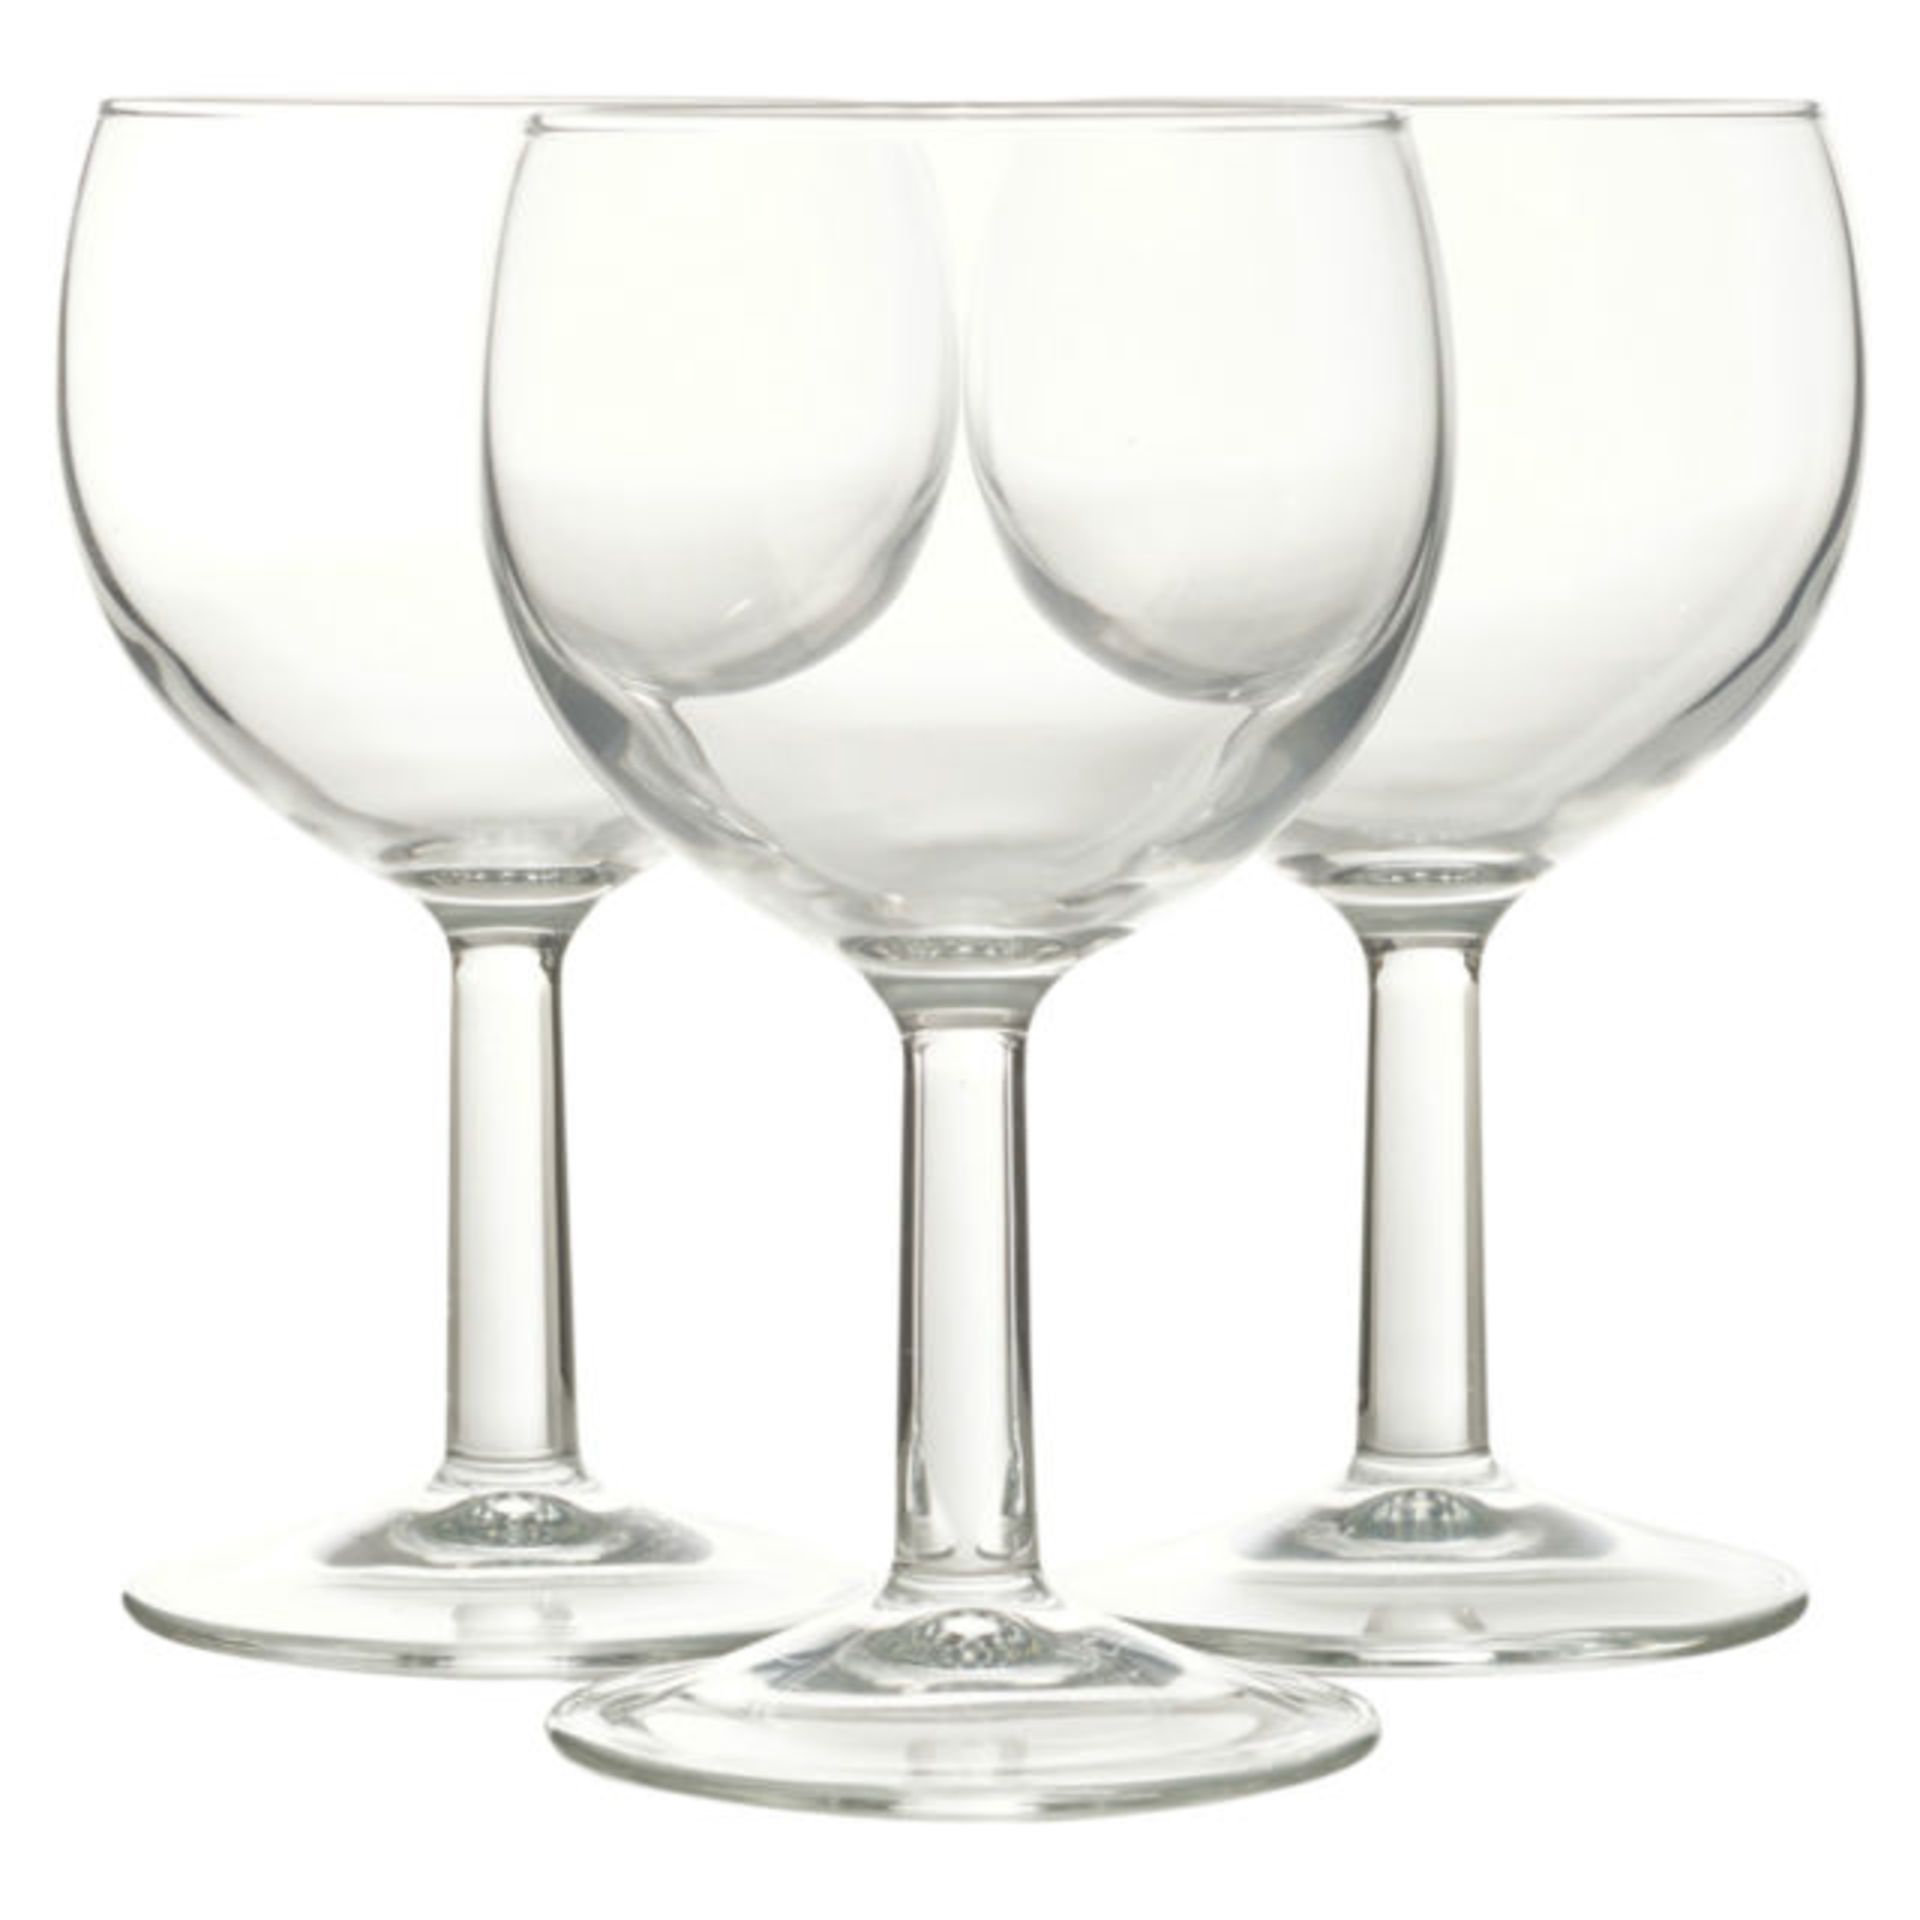 + VAT Brand New Red Wine Glasses - 3 x 25cl Glasses